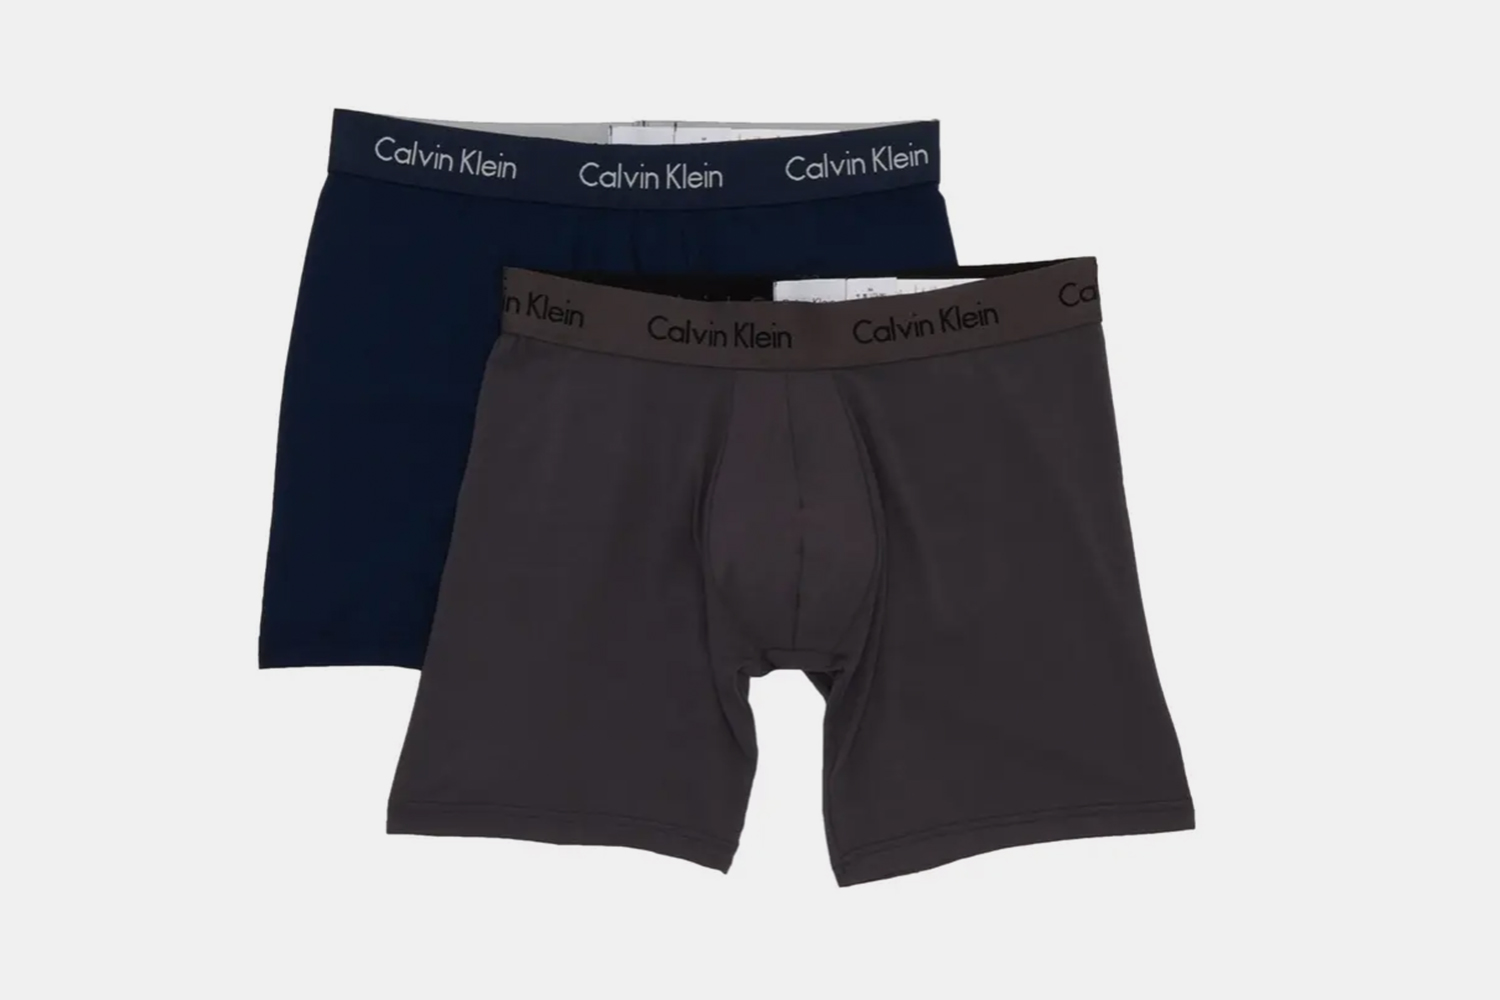 Kan worden genegeerd moeilijk partner Deal: These Calvin Klein Boxer Briefs Are Half Off - InsideHook